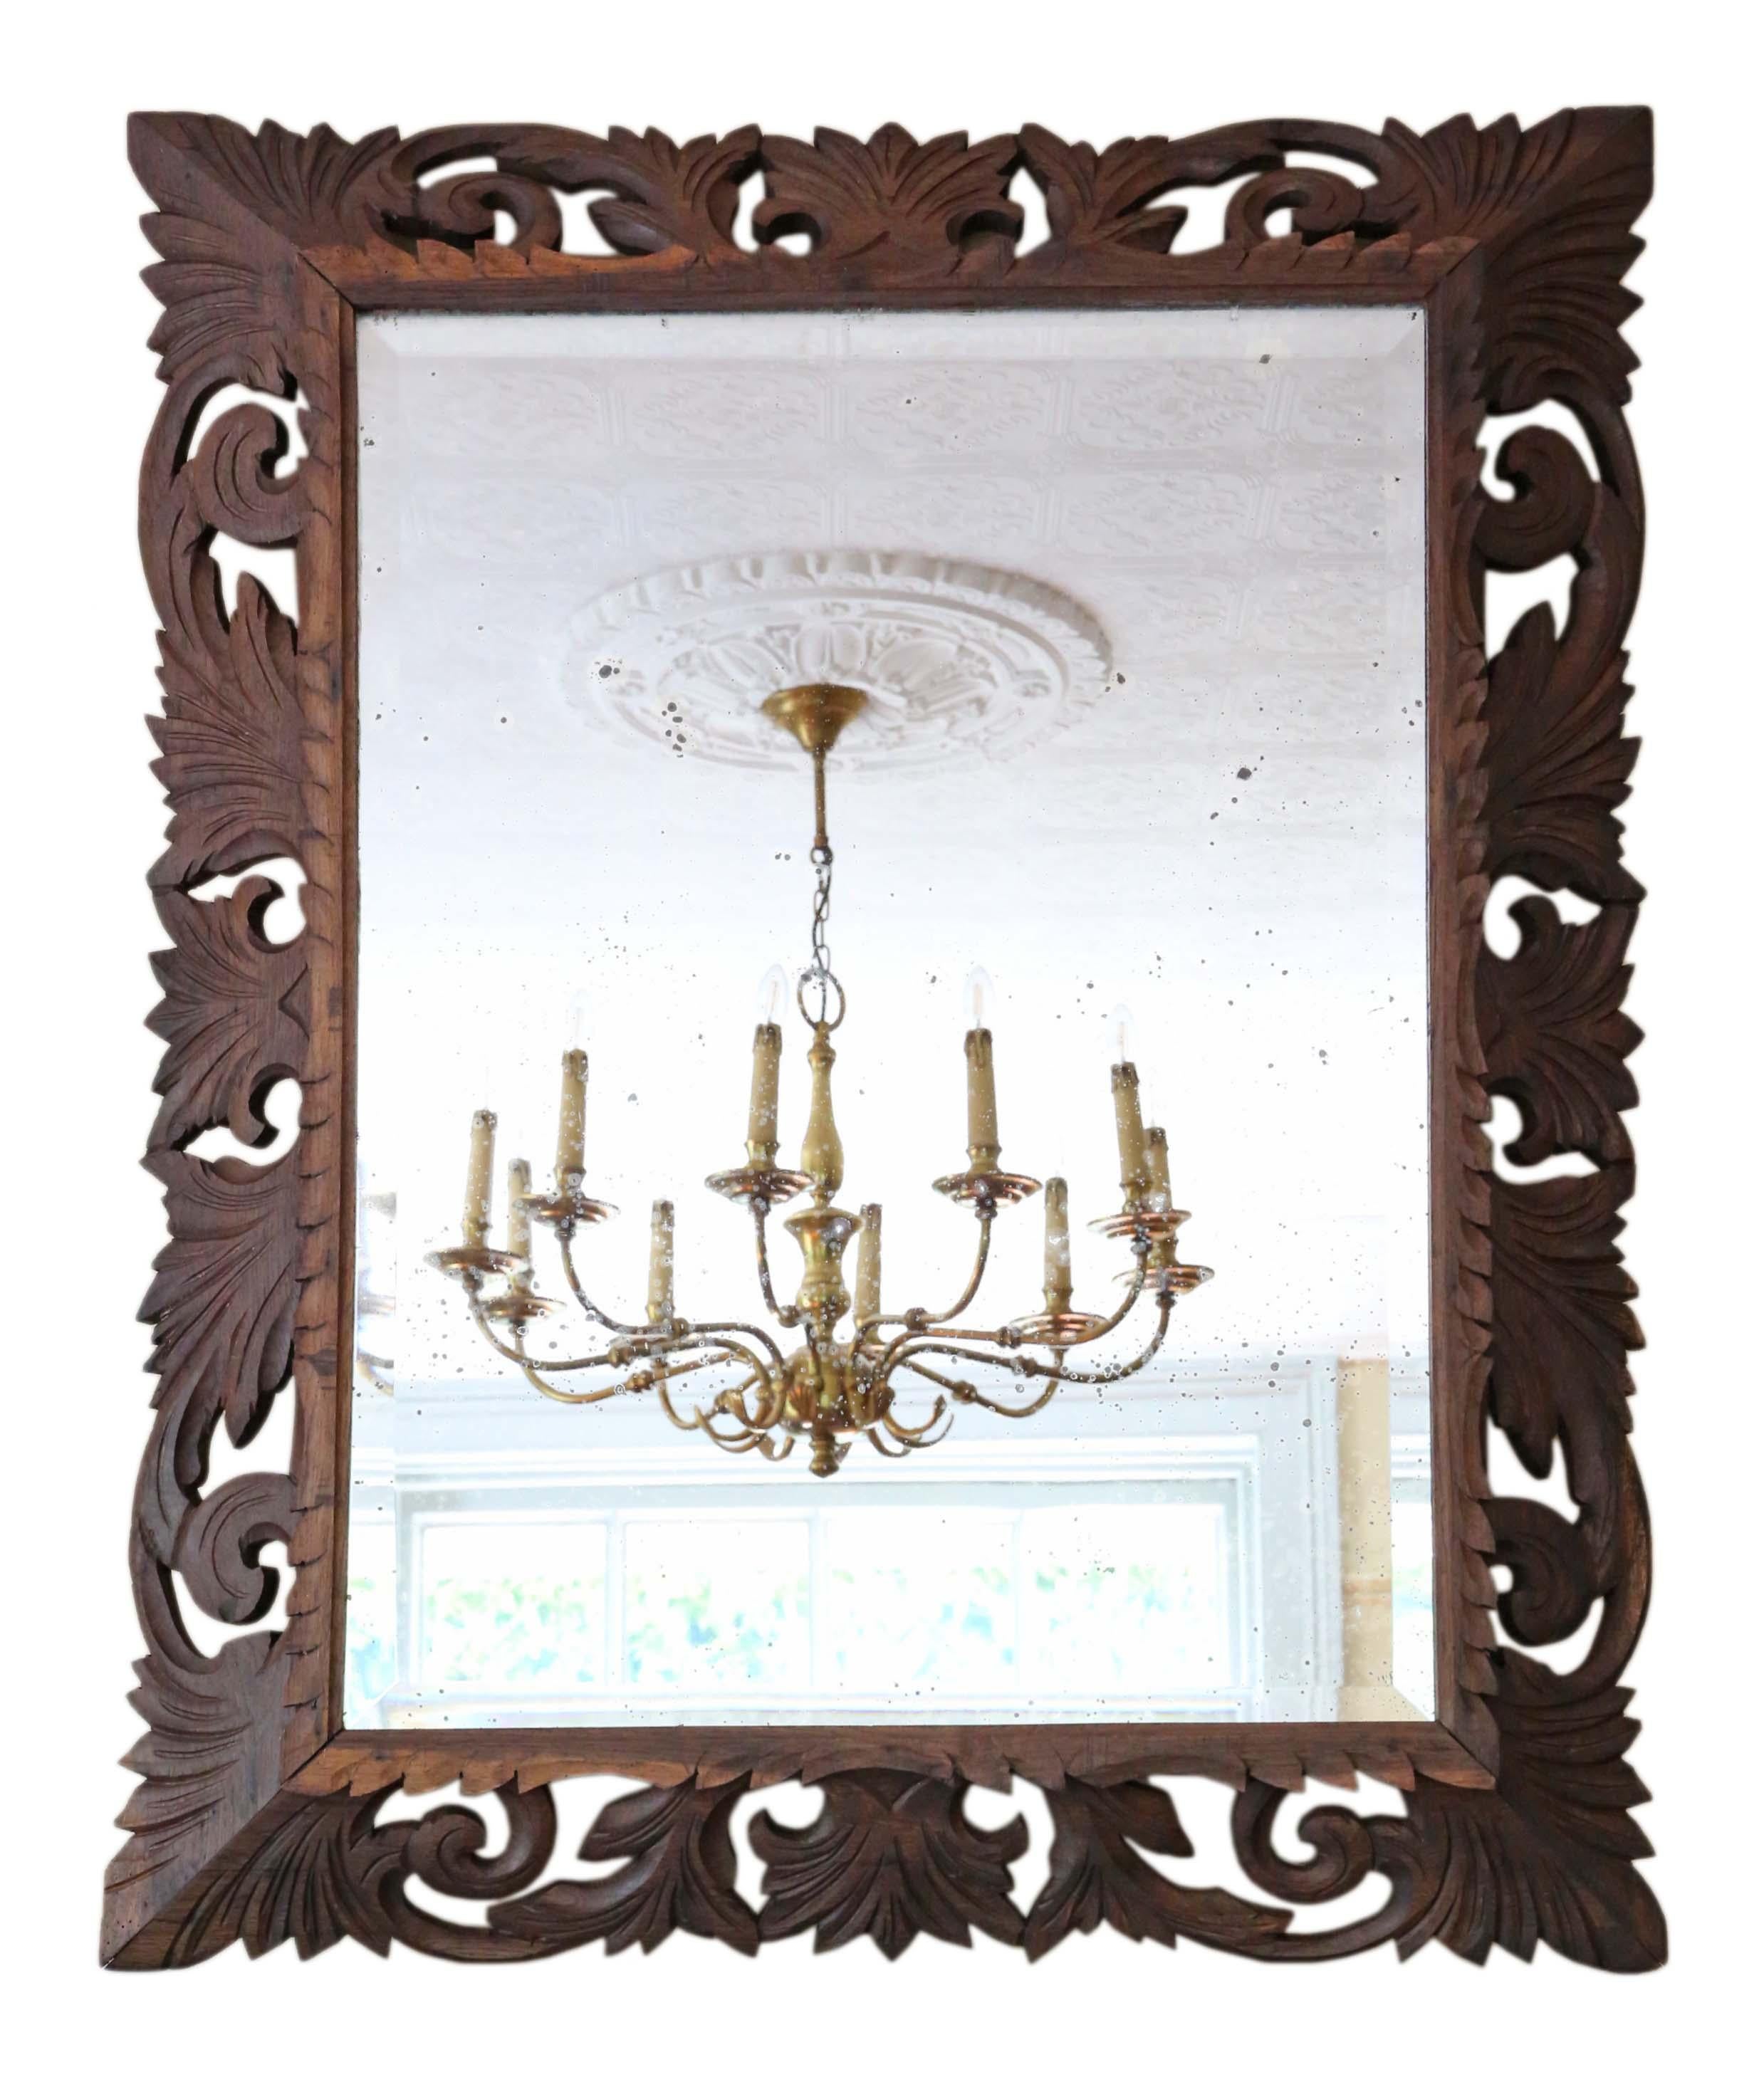 Antike große Qualität Florentine geschnitzt Hartholz (Padauk) Wand oder overmantle Spiegel C1900. Kann im Hoch- oder Querformat aufgehängt werden.

Ein beeindruckender Fund, der an der richtigen Stelle fantastisch aussehen würde. Keine losen Fugen